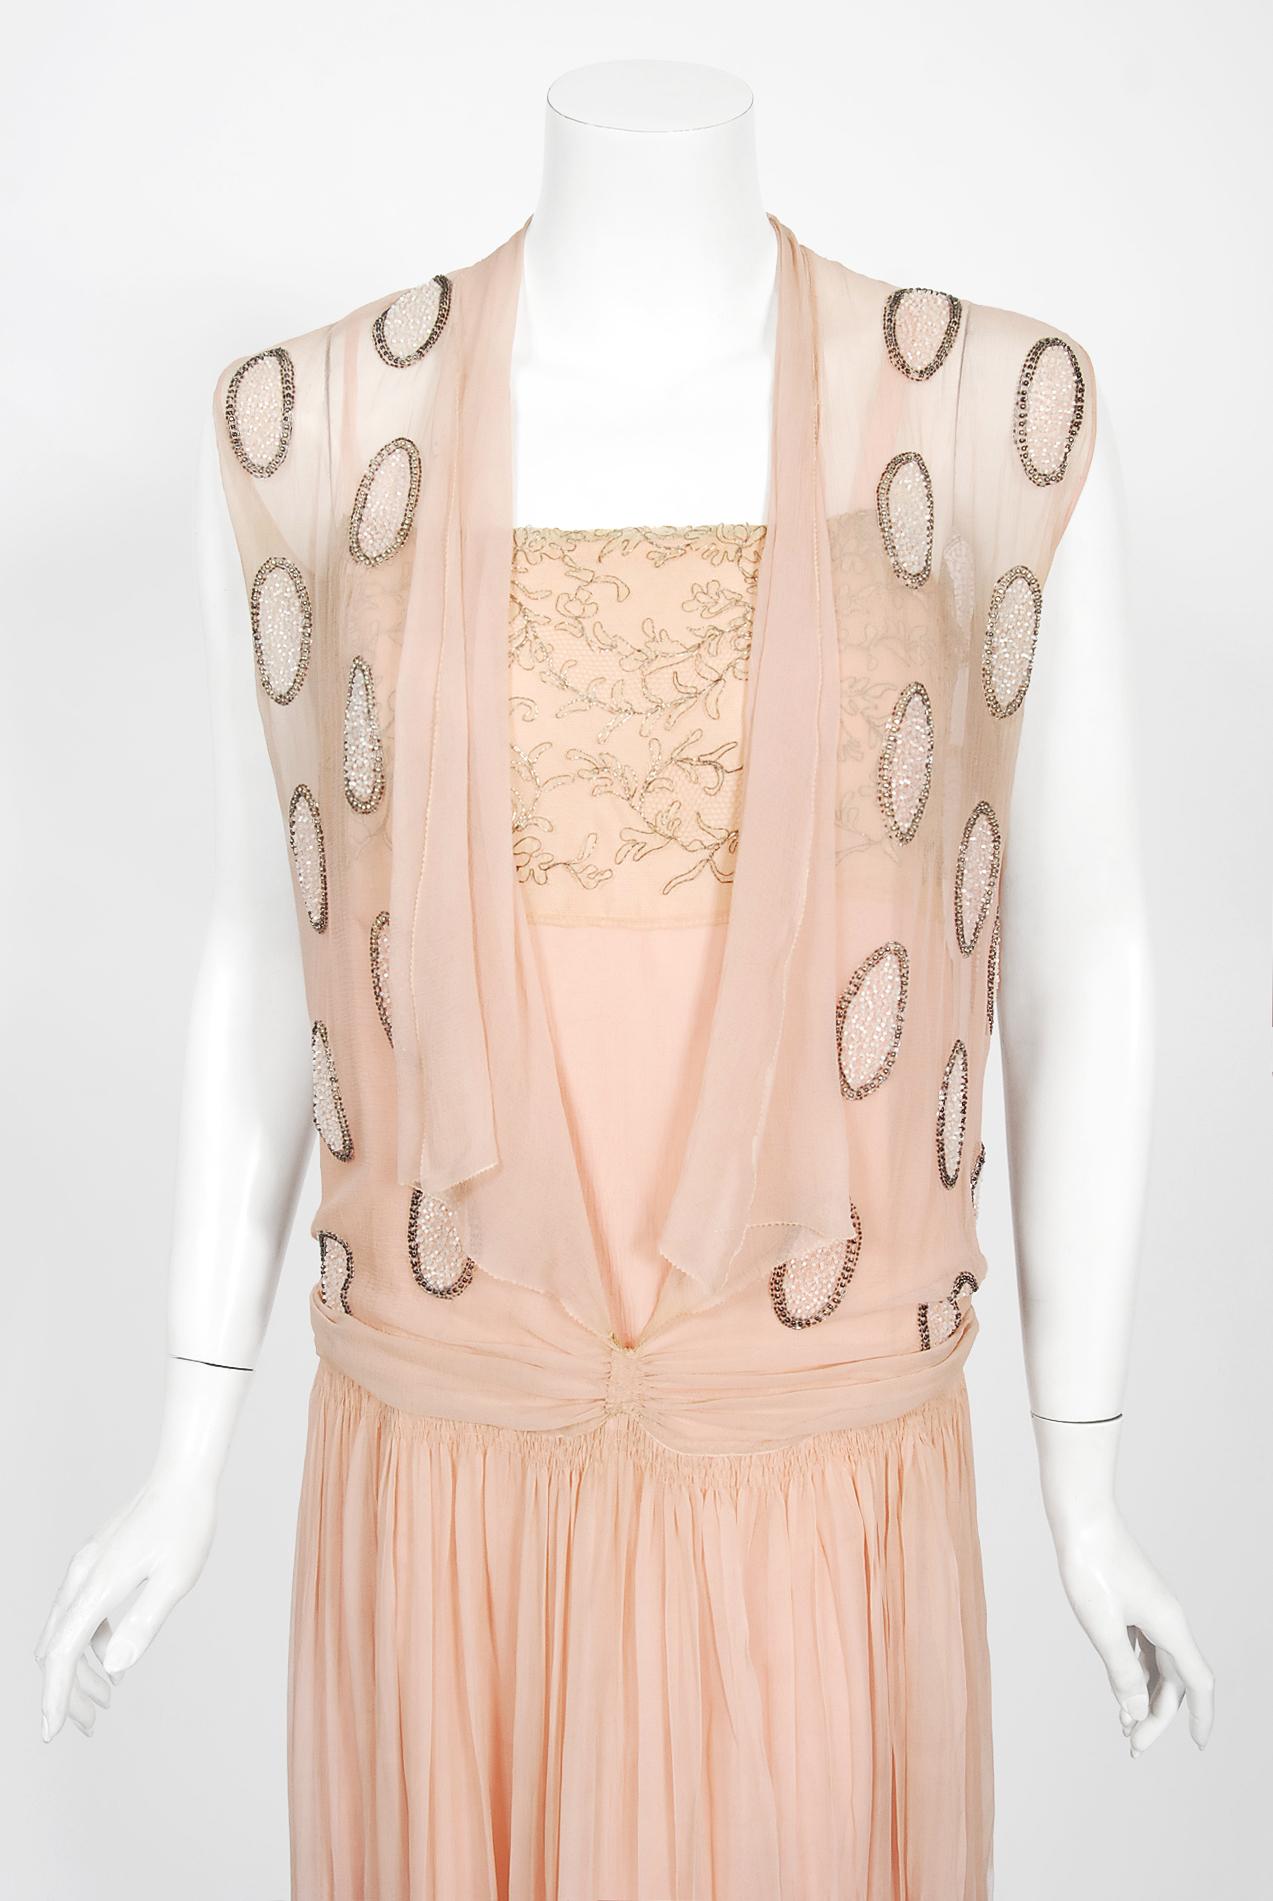 Dieses mit Perlen besetzte Tanzkleid aus den 1920er-Jahren in rosa Ballerina-Slipper-Optik hat seinen magischen Zauber bis heute nicht verloren. Diese außergewöhnliche französische Schönheit ist aus Seidenchiffon gefertigt und mit üppigen Perlen in